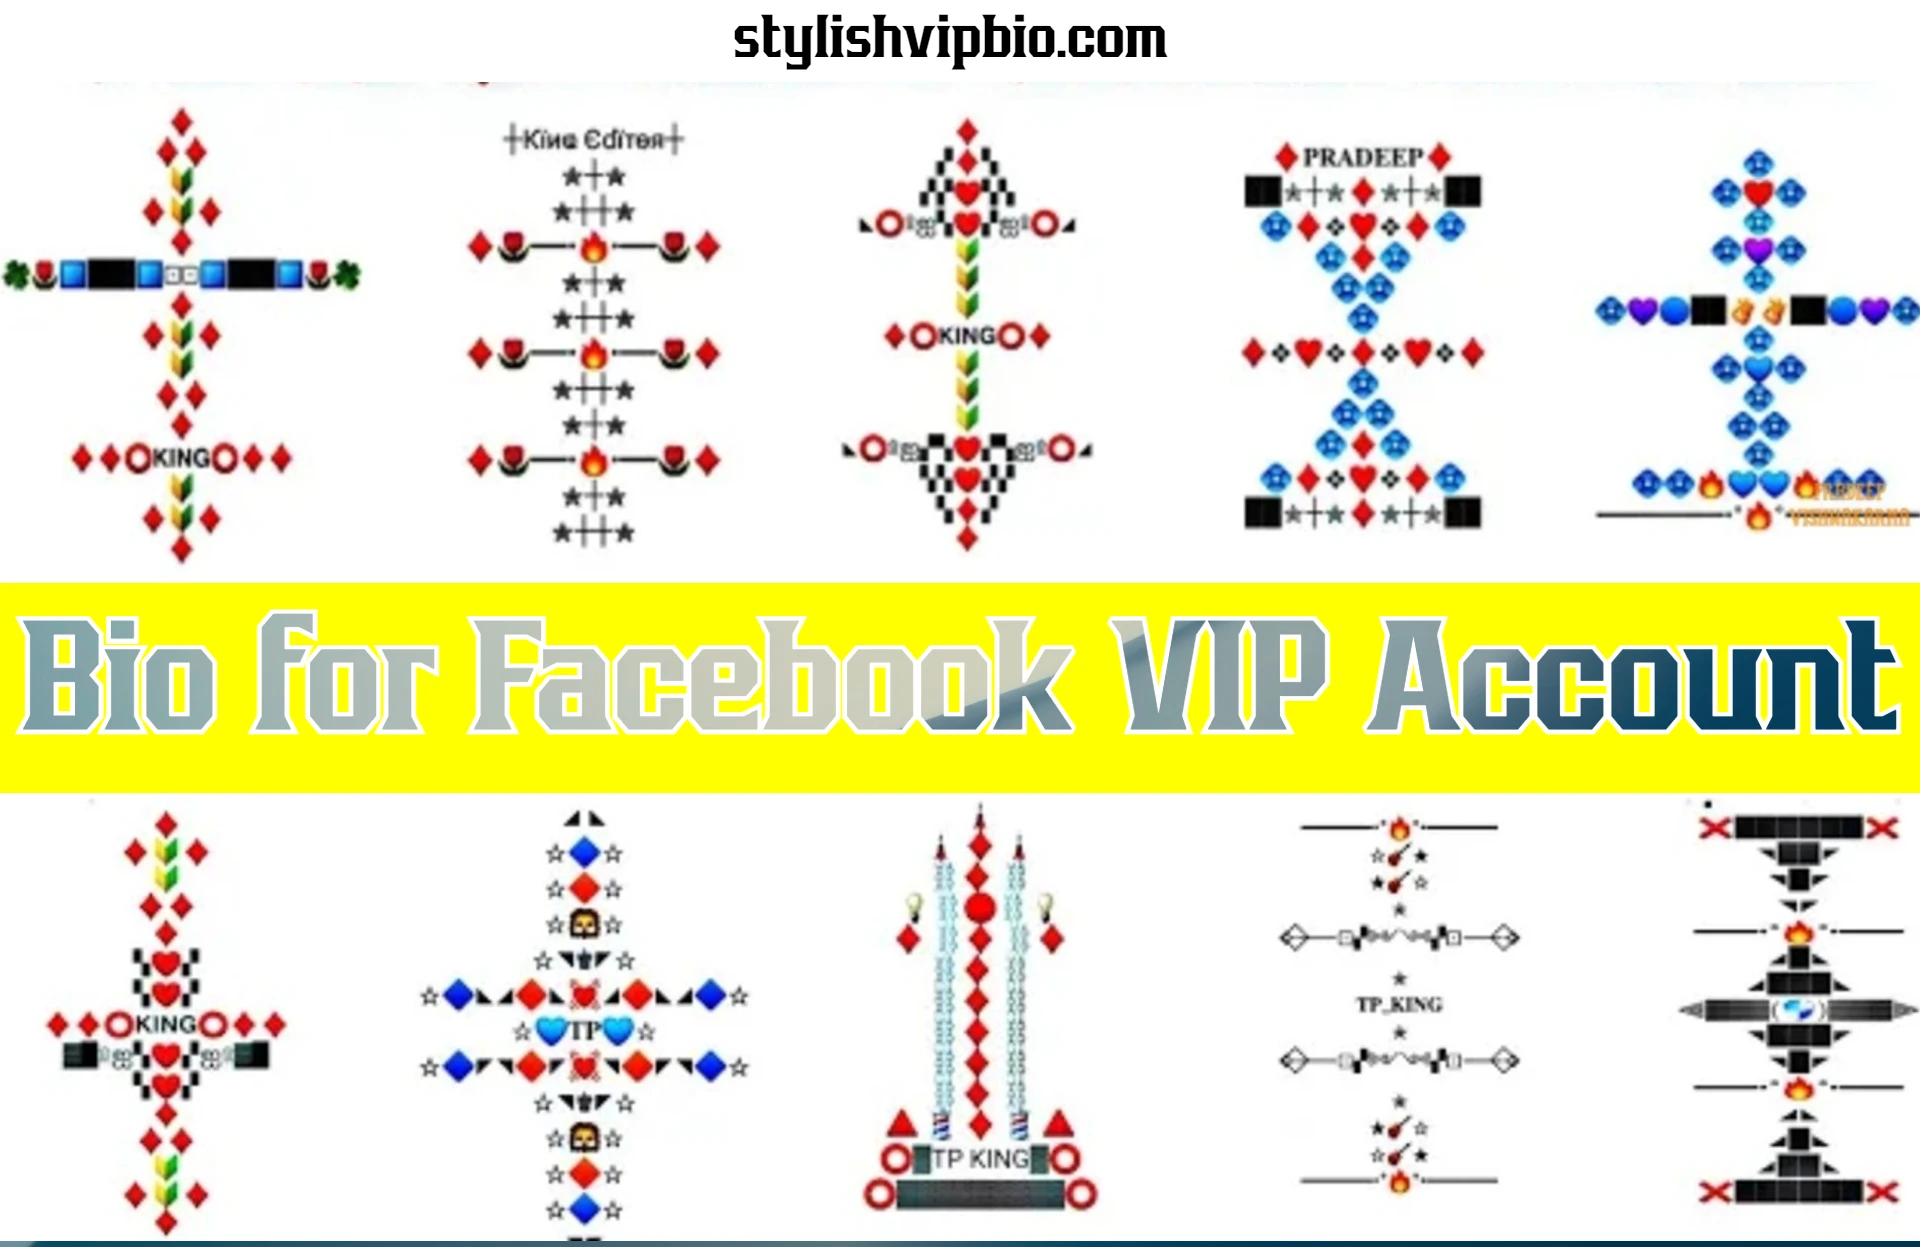 Bio for Facebook VIP Account